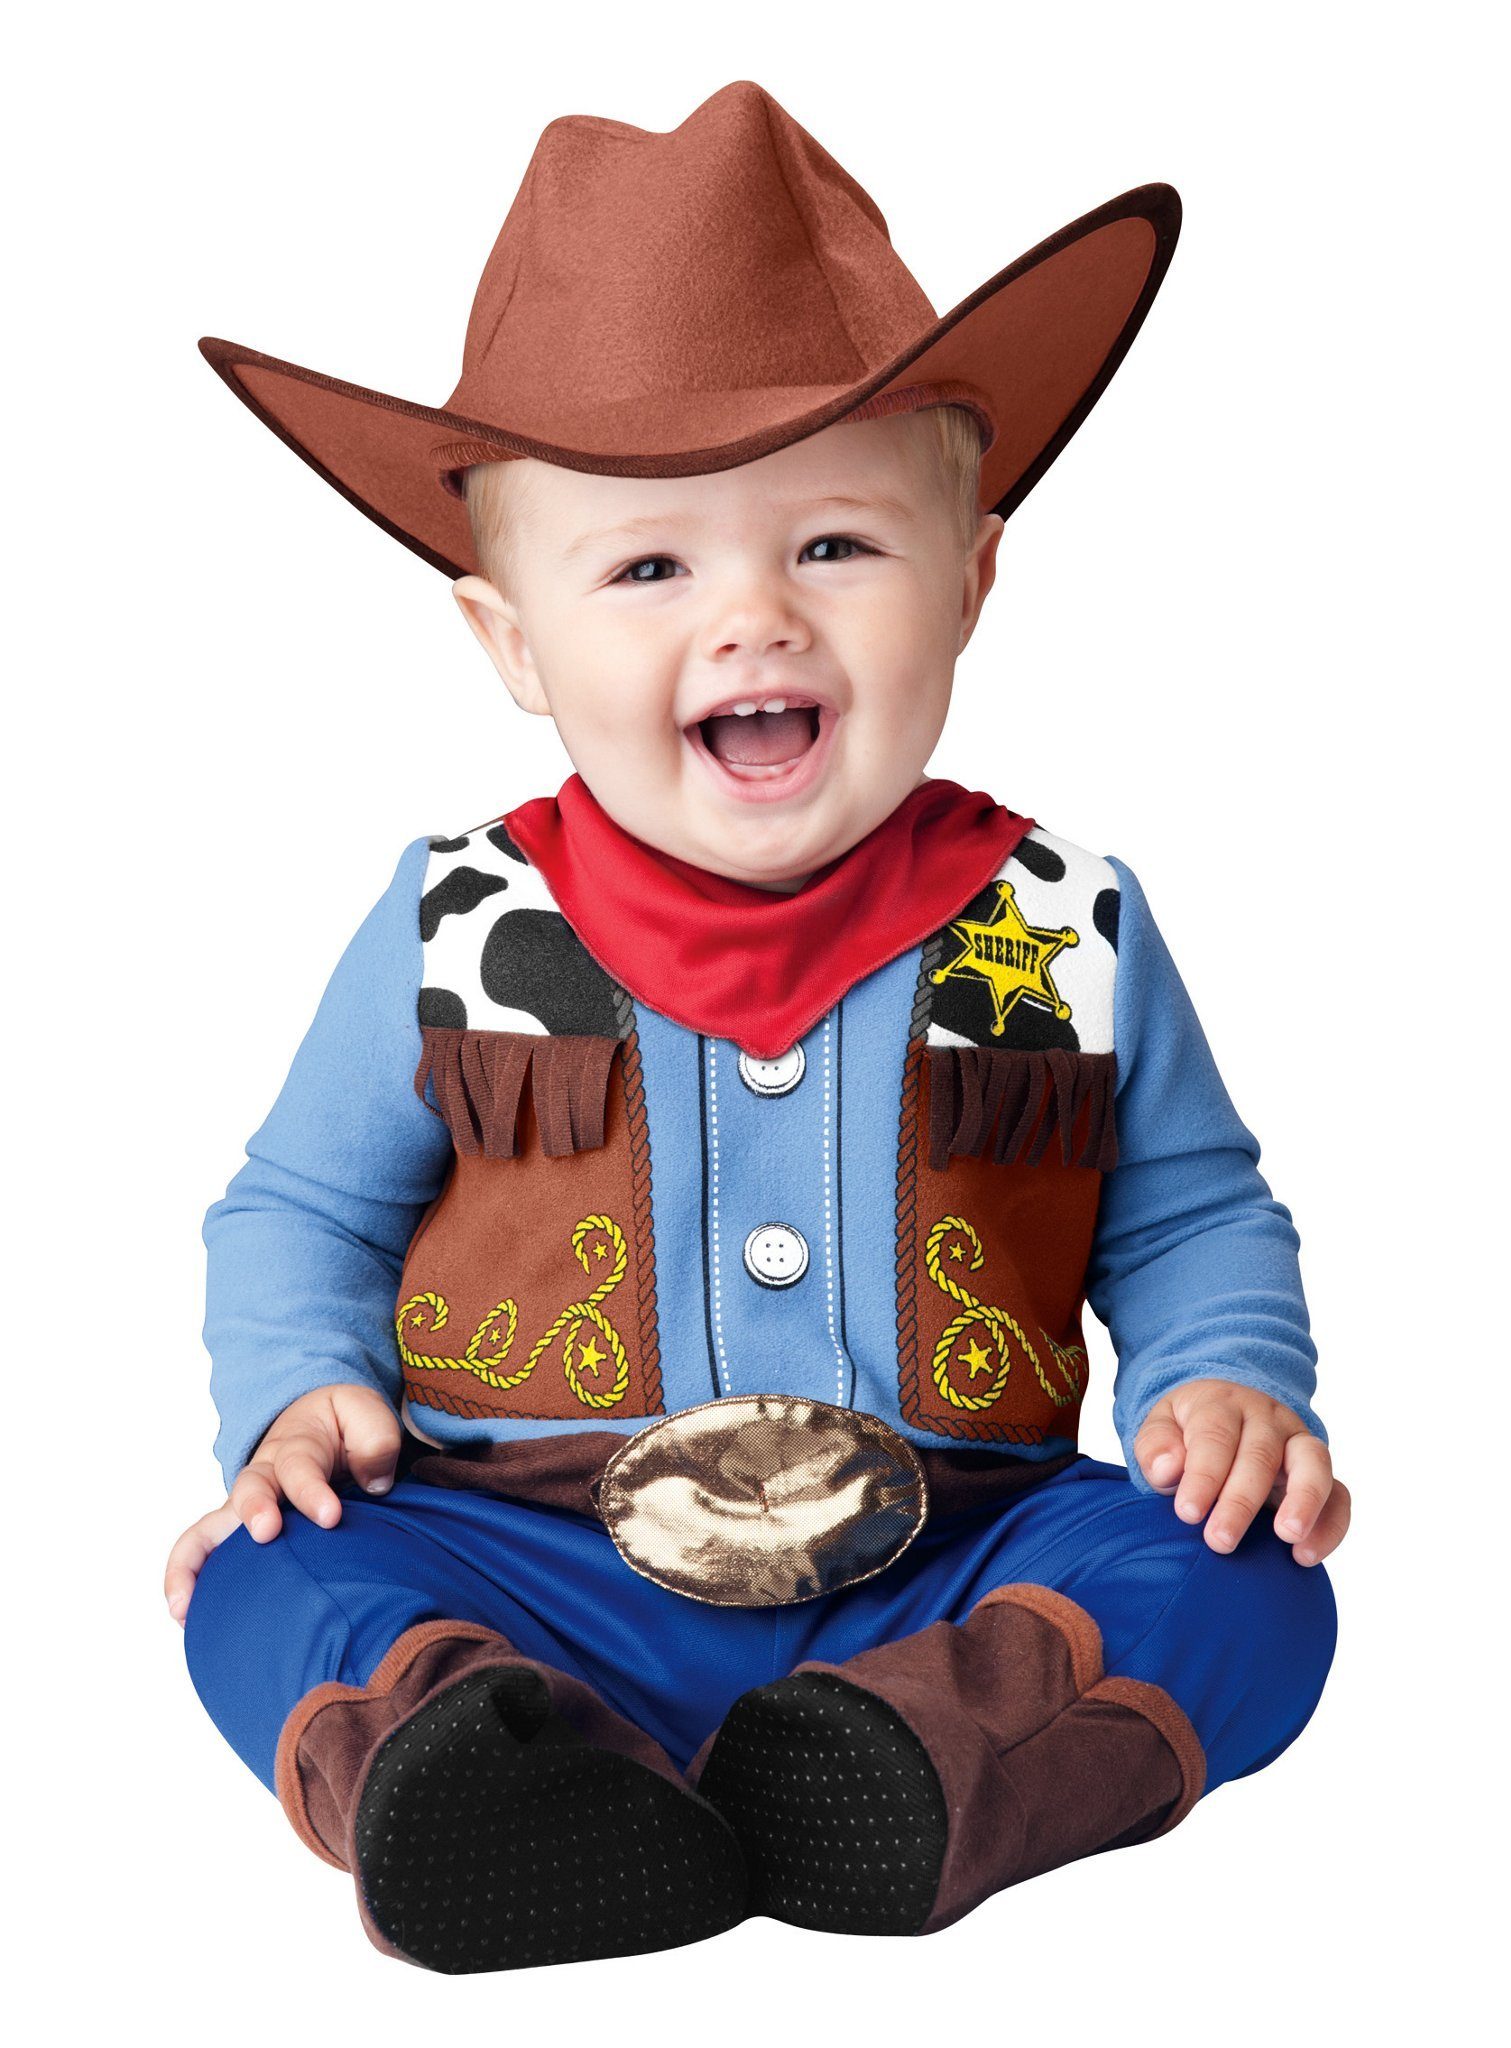 In Character Kostüm Sheriff, Lustiges Westernkostüm für kleine Gesetzeshüter